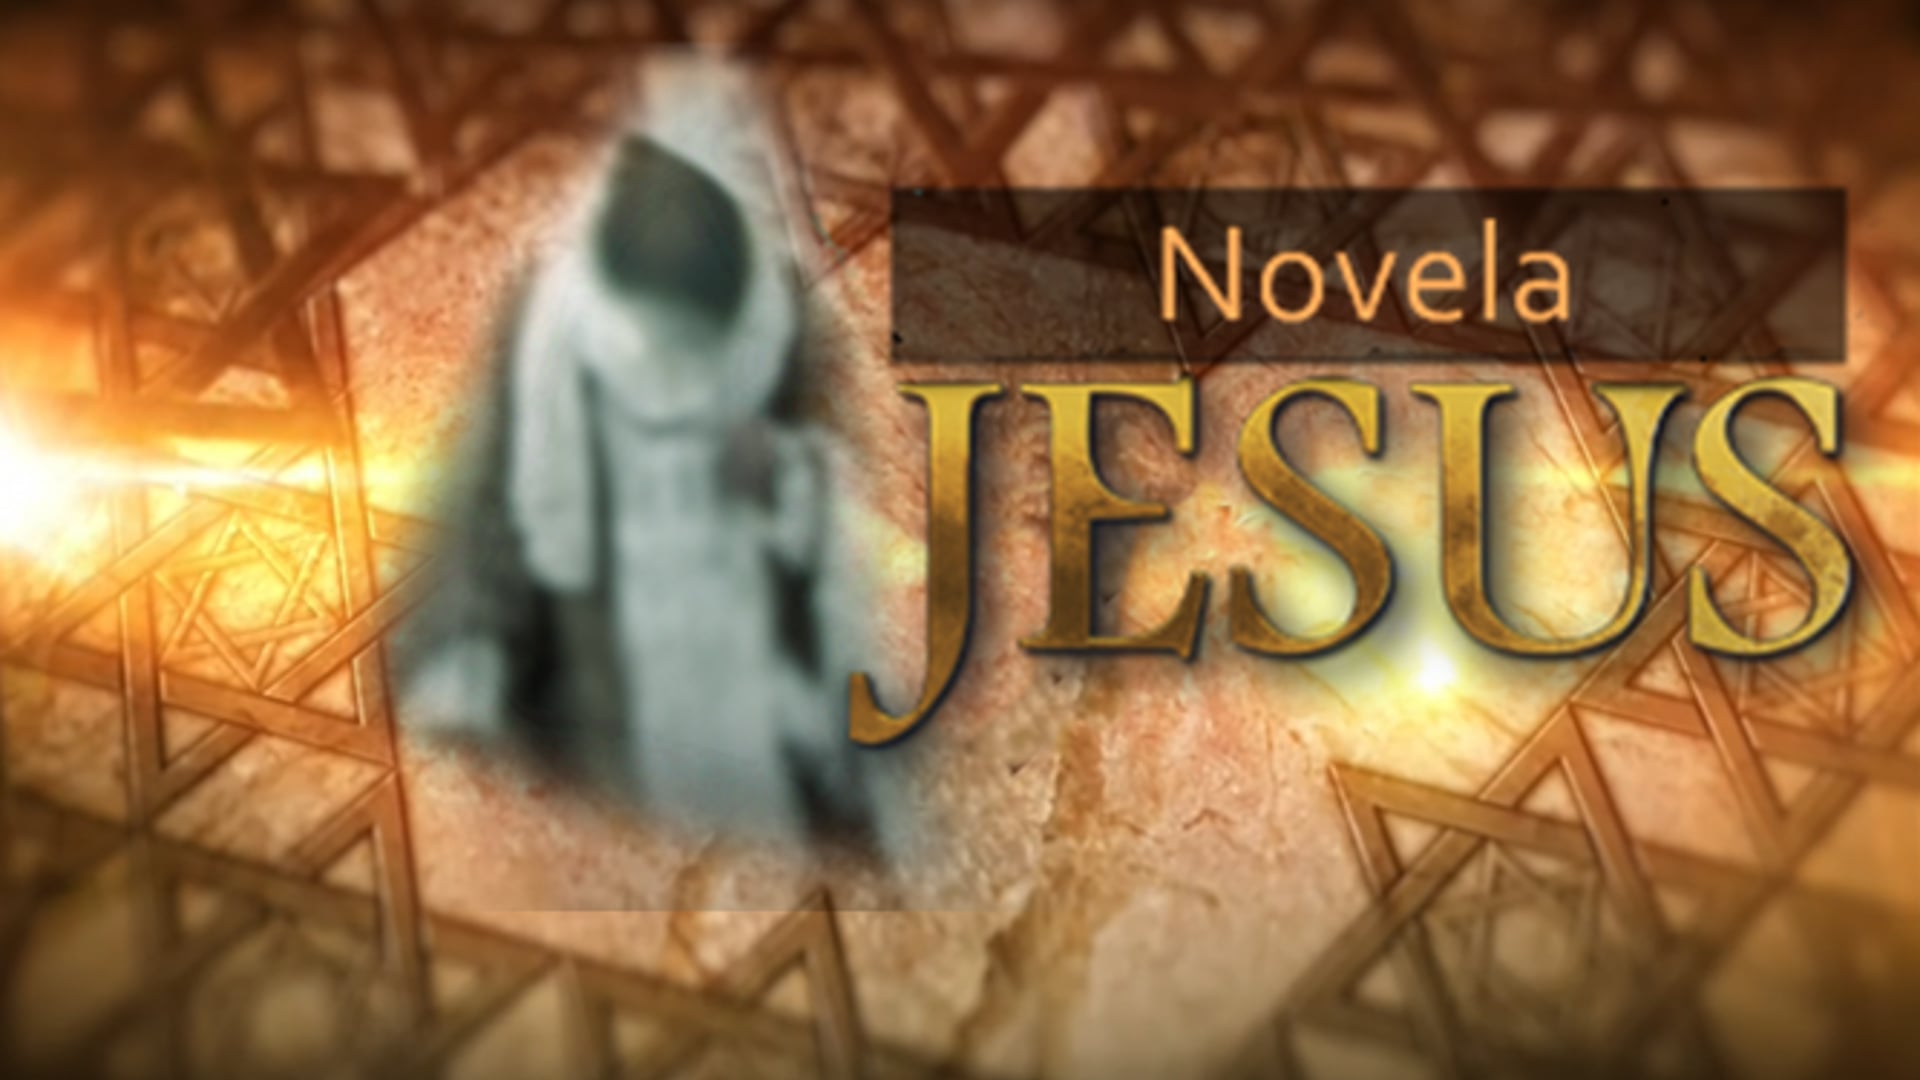 Hilton Castro como Zaqueu na novela Jesus na Tv Record